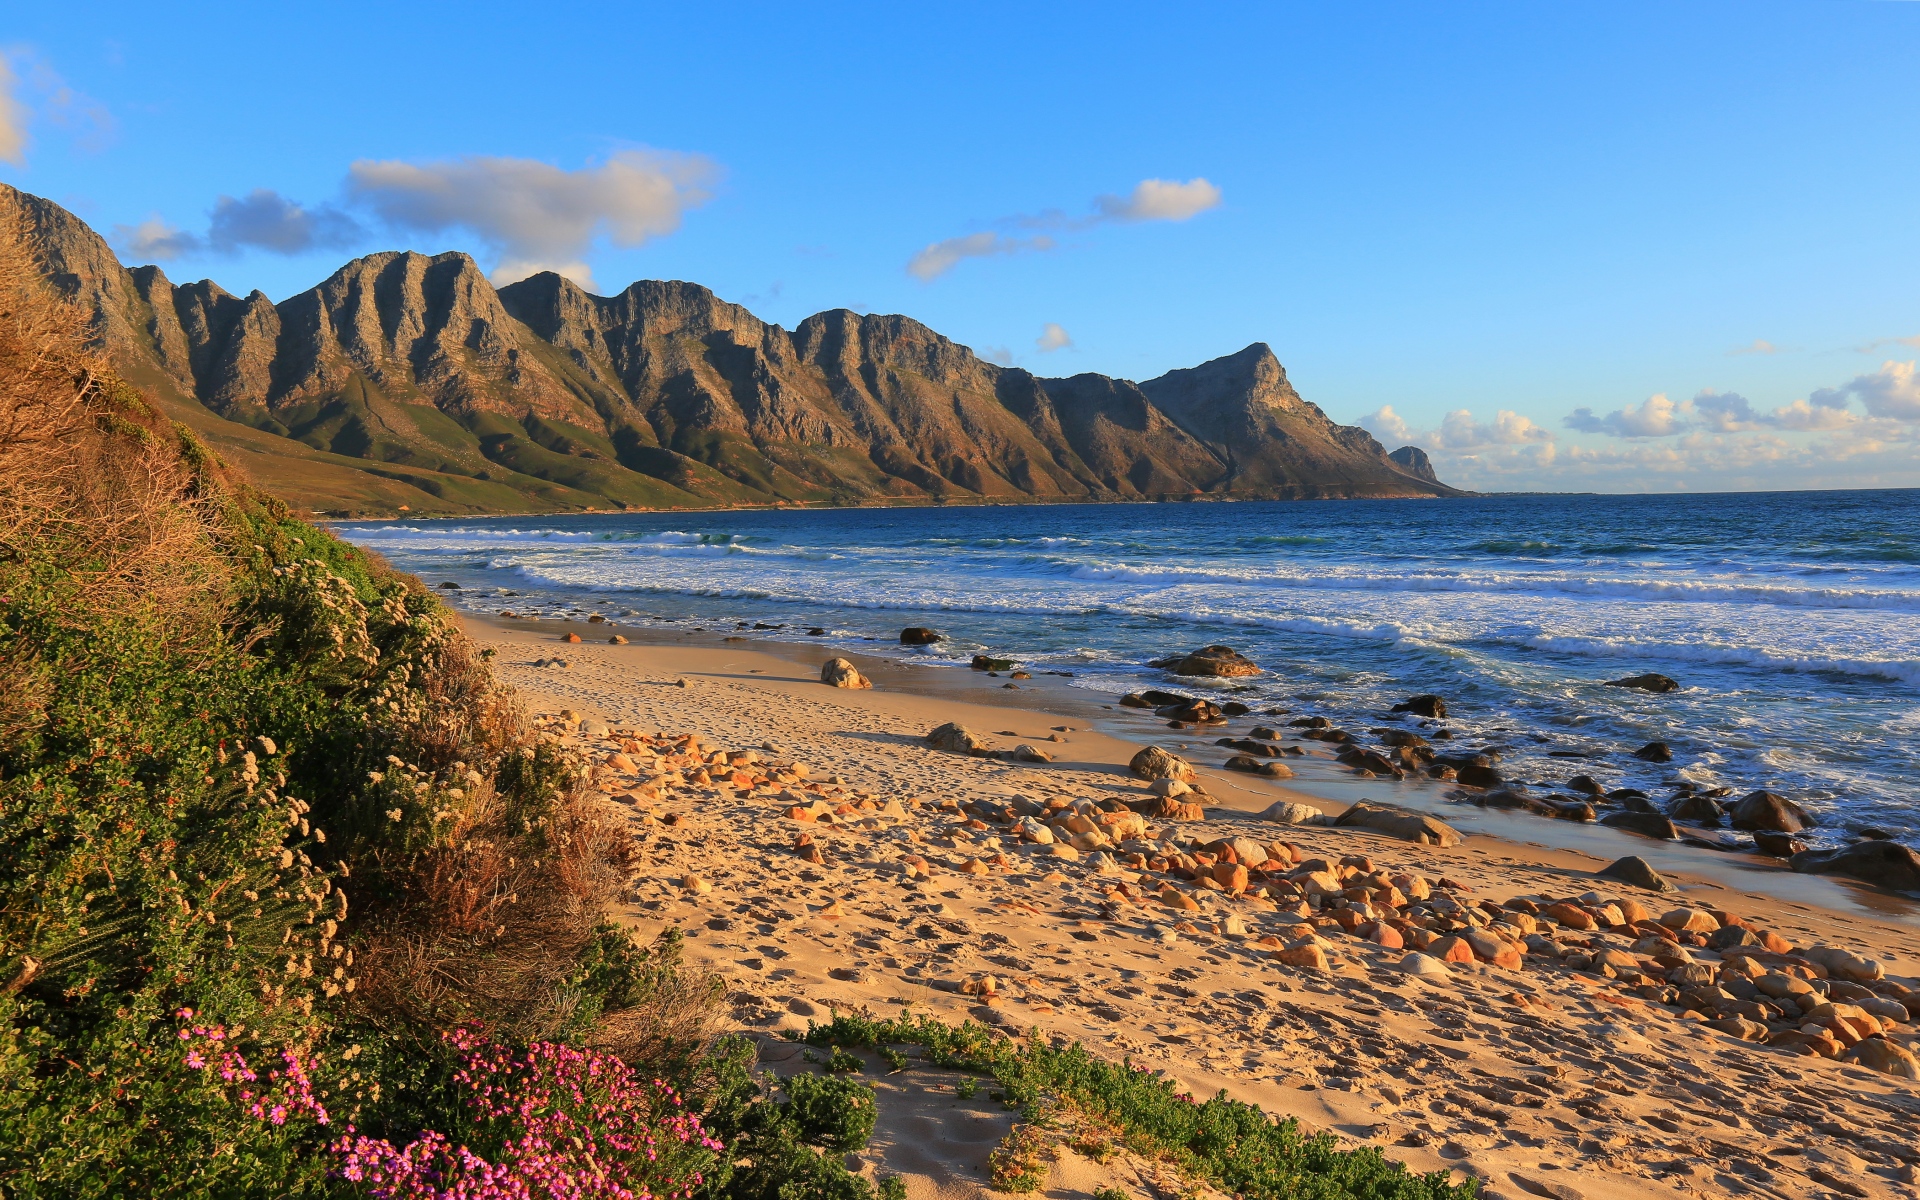 Картинки Overberg, южная африка, море, пляж, песок фото и обои на рабочий стол